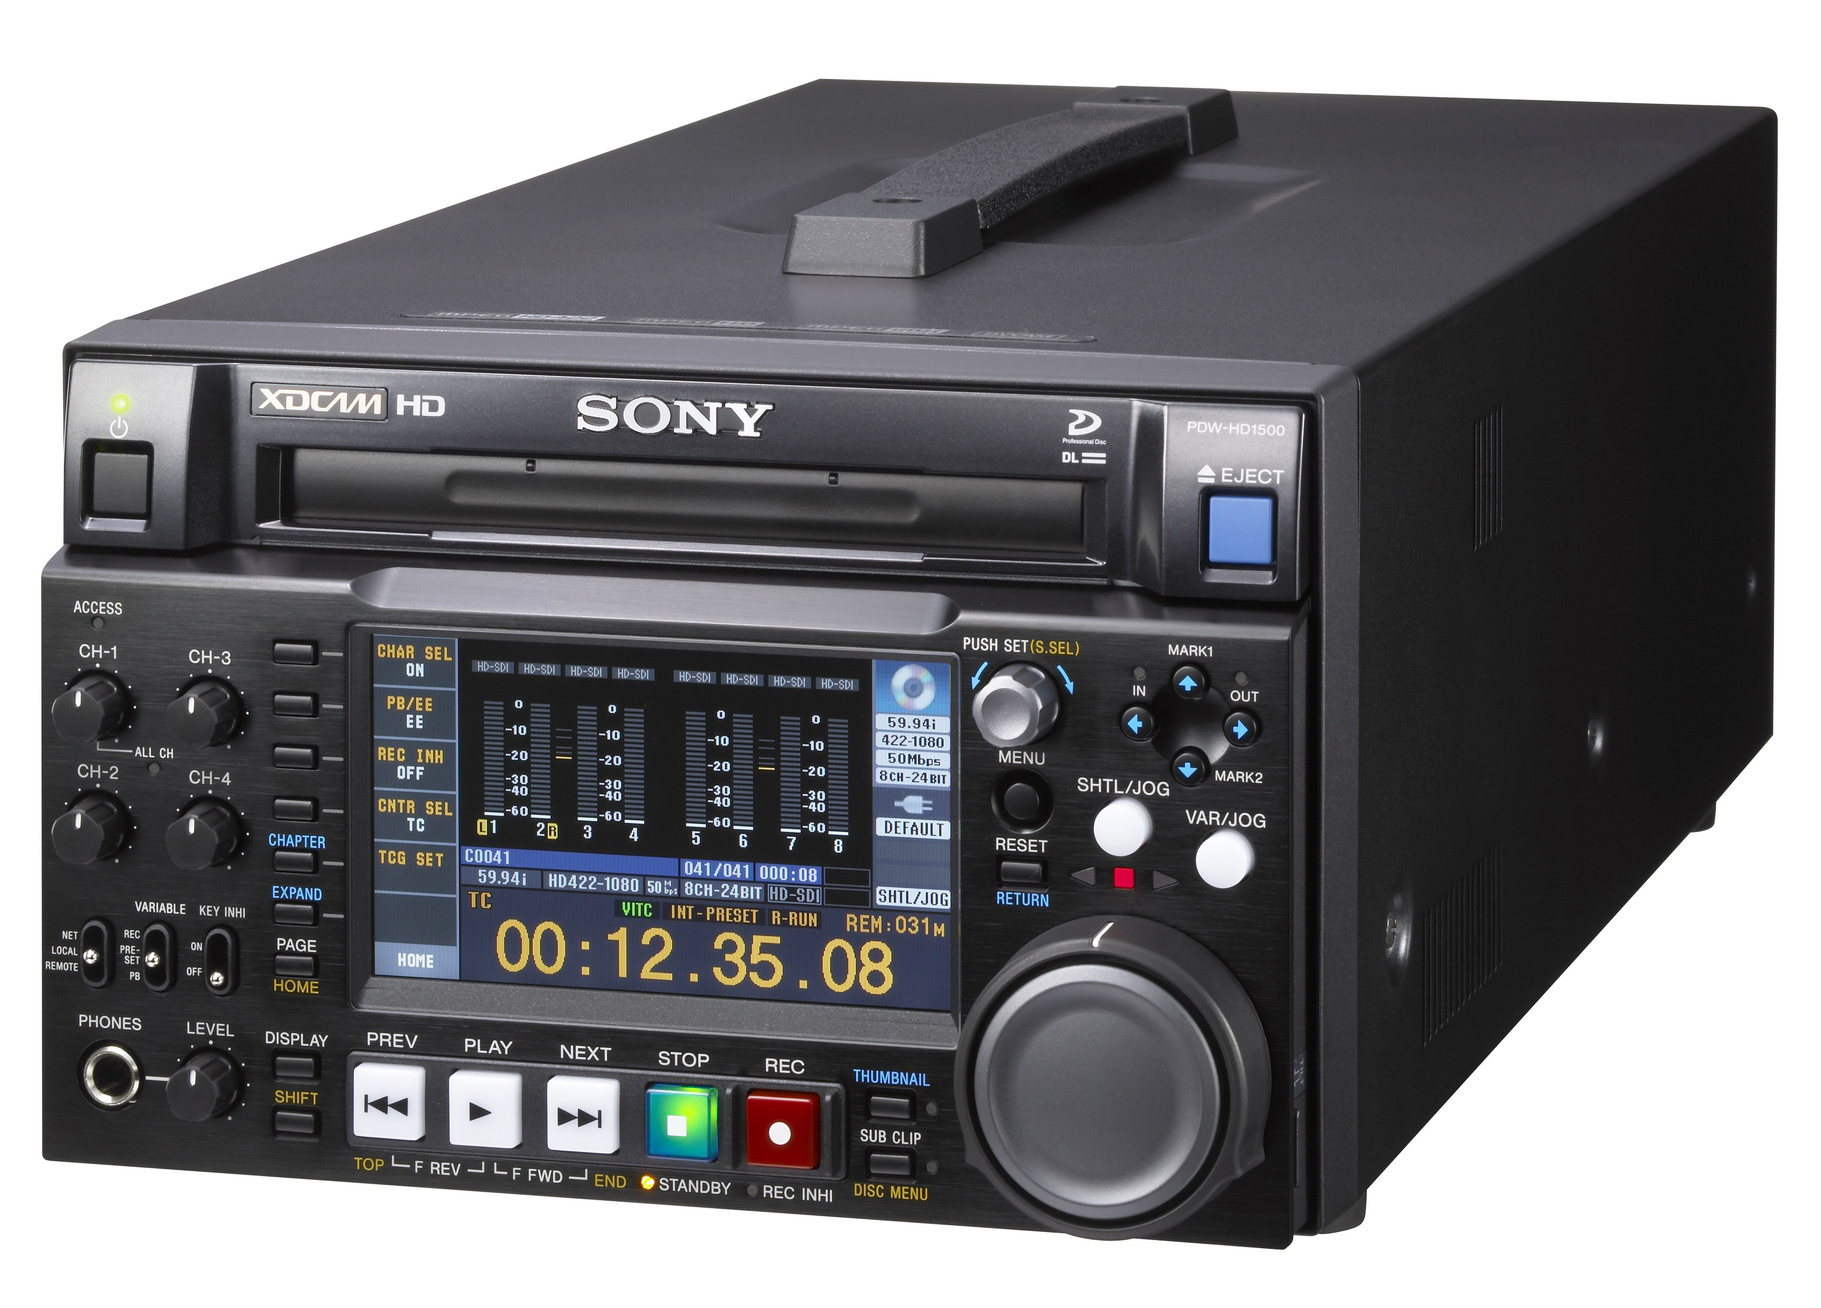 SONY PDW-HD1500 XDCAM HD